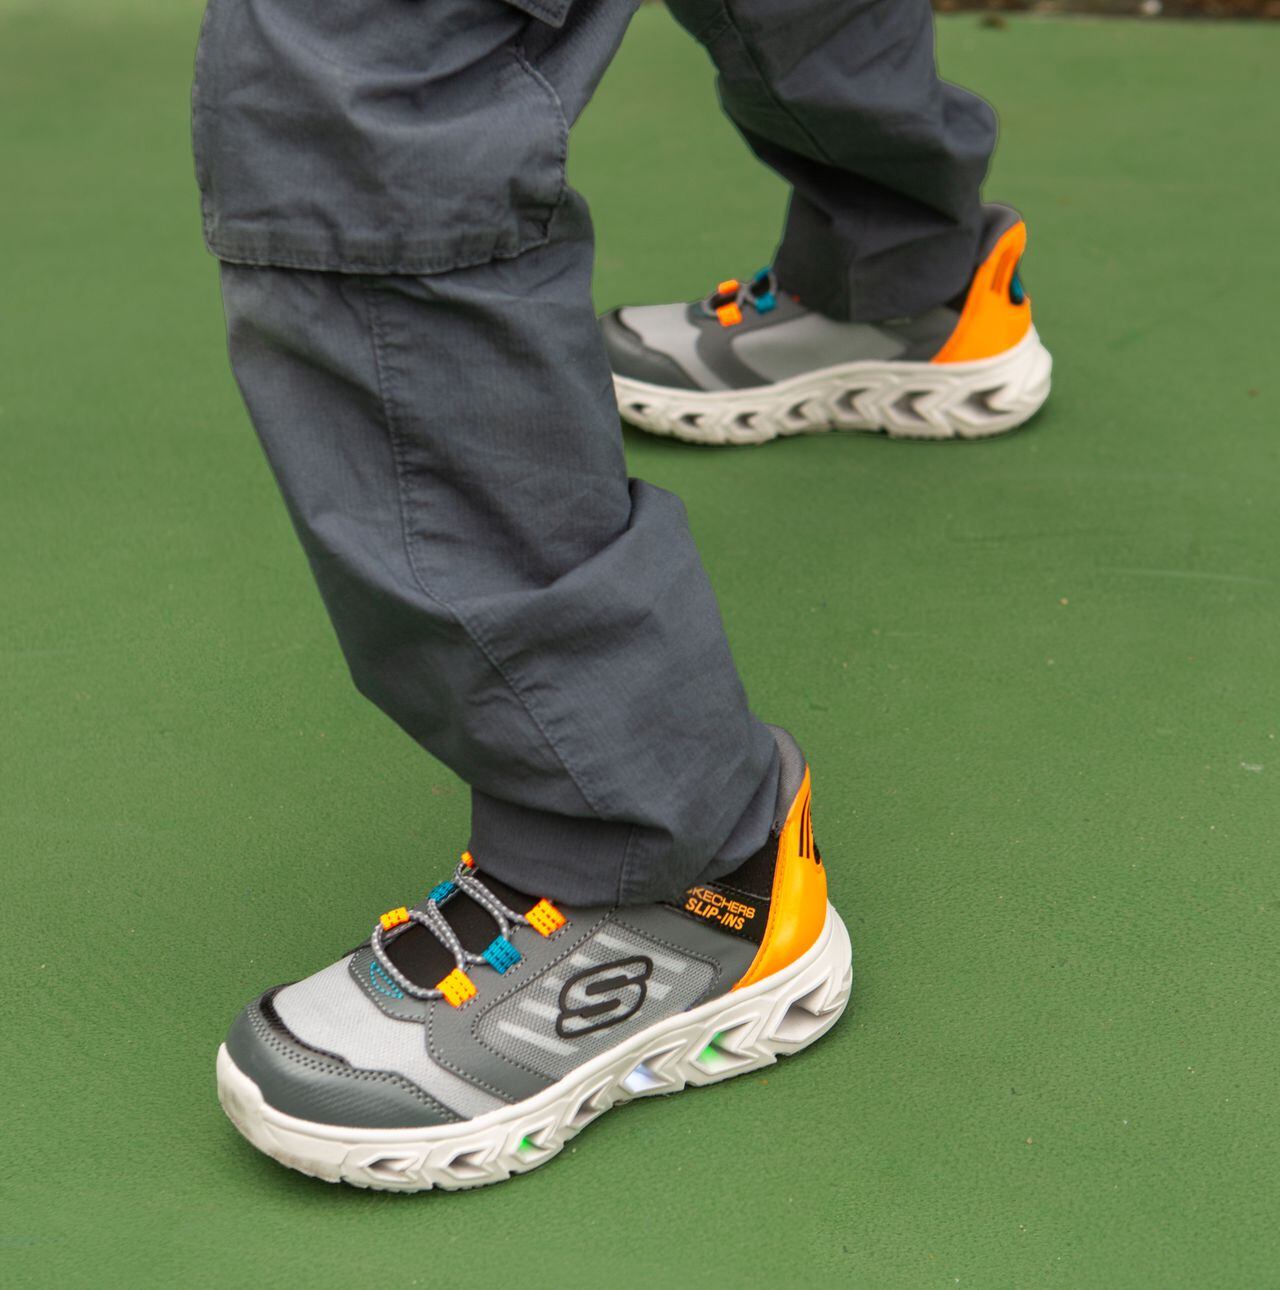 El calzado de Skechers se destaca por los  materiales de alta calidad y durabilidad, a prueba de las aventuras de cualquier niño.